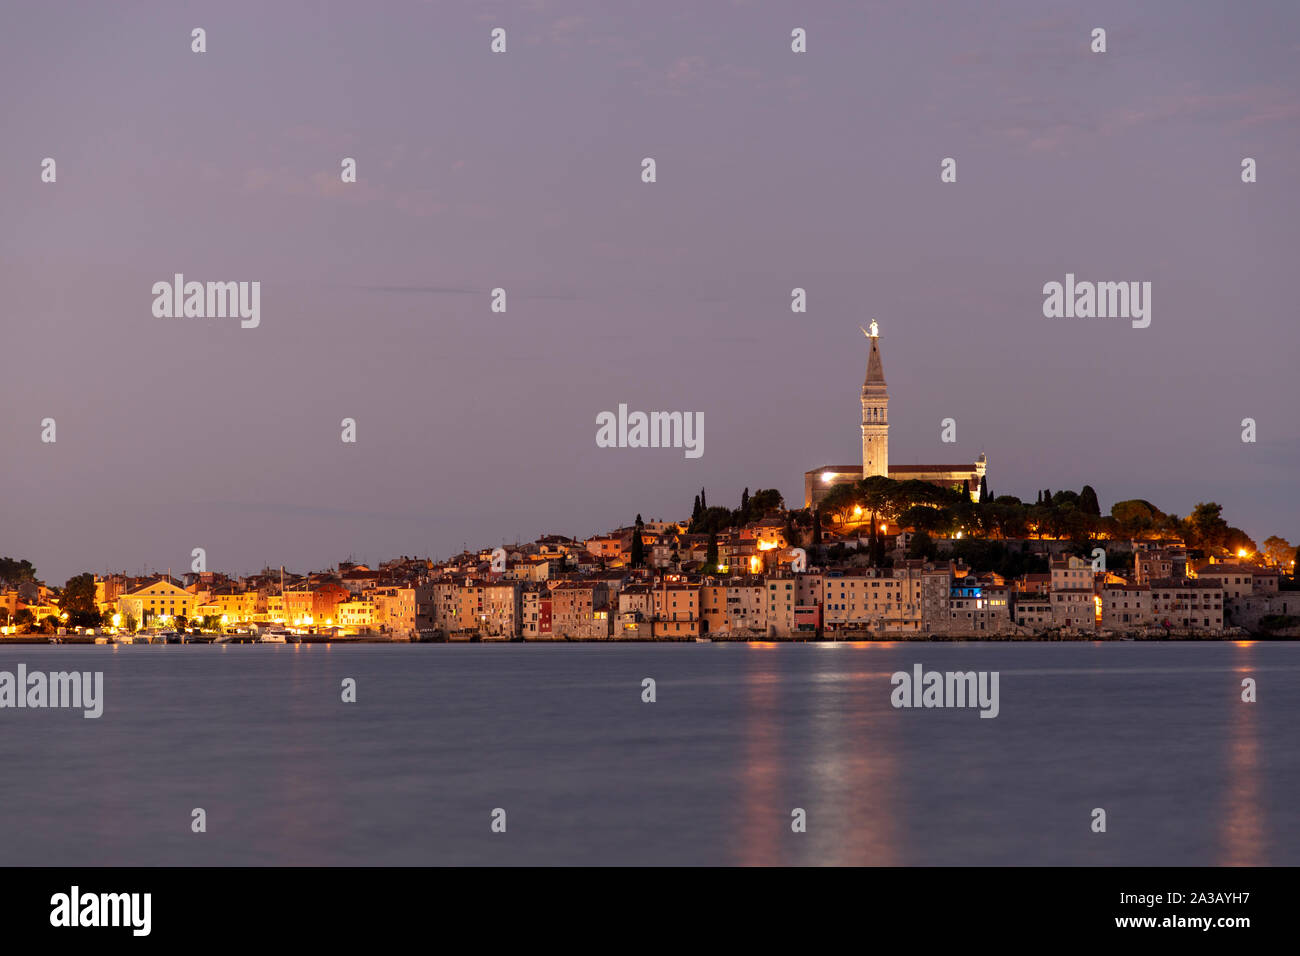 Night landscape of Rovigno town in Croatia Stock Photo